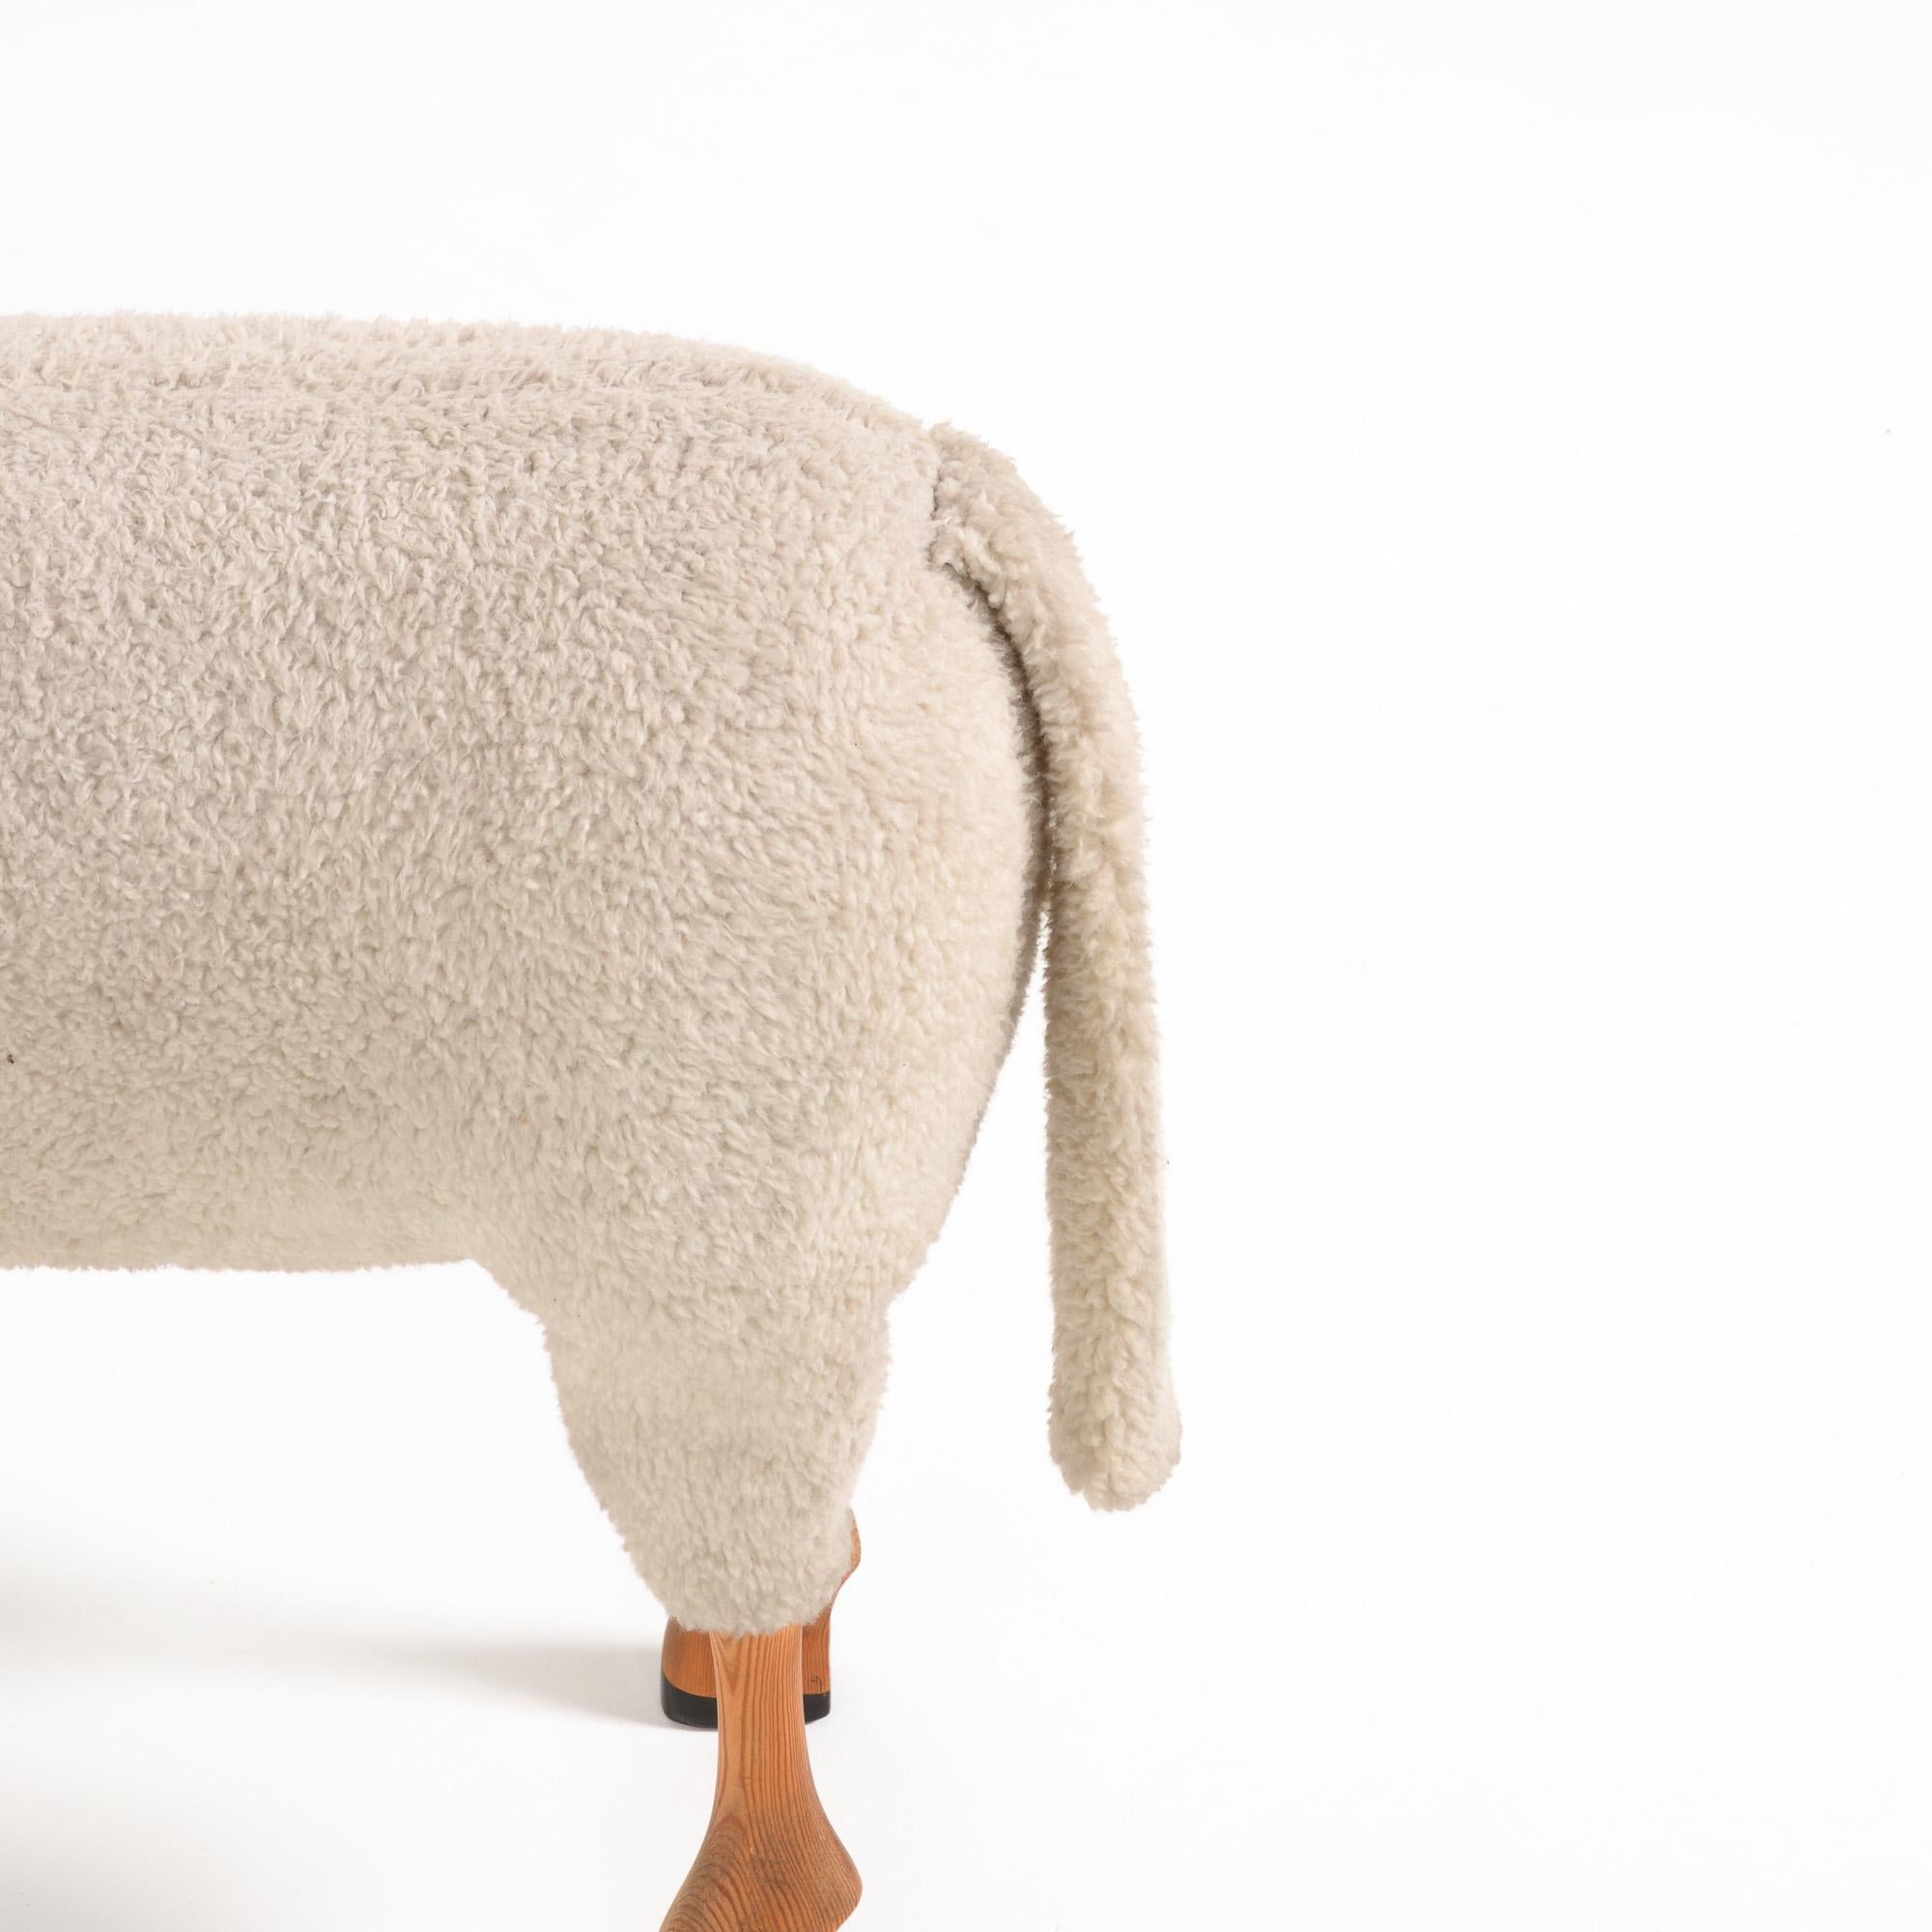 Wool Sheep Sculpture by Hans-Peter Krafft for Meier 3